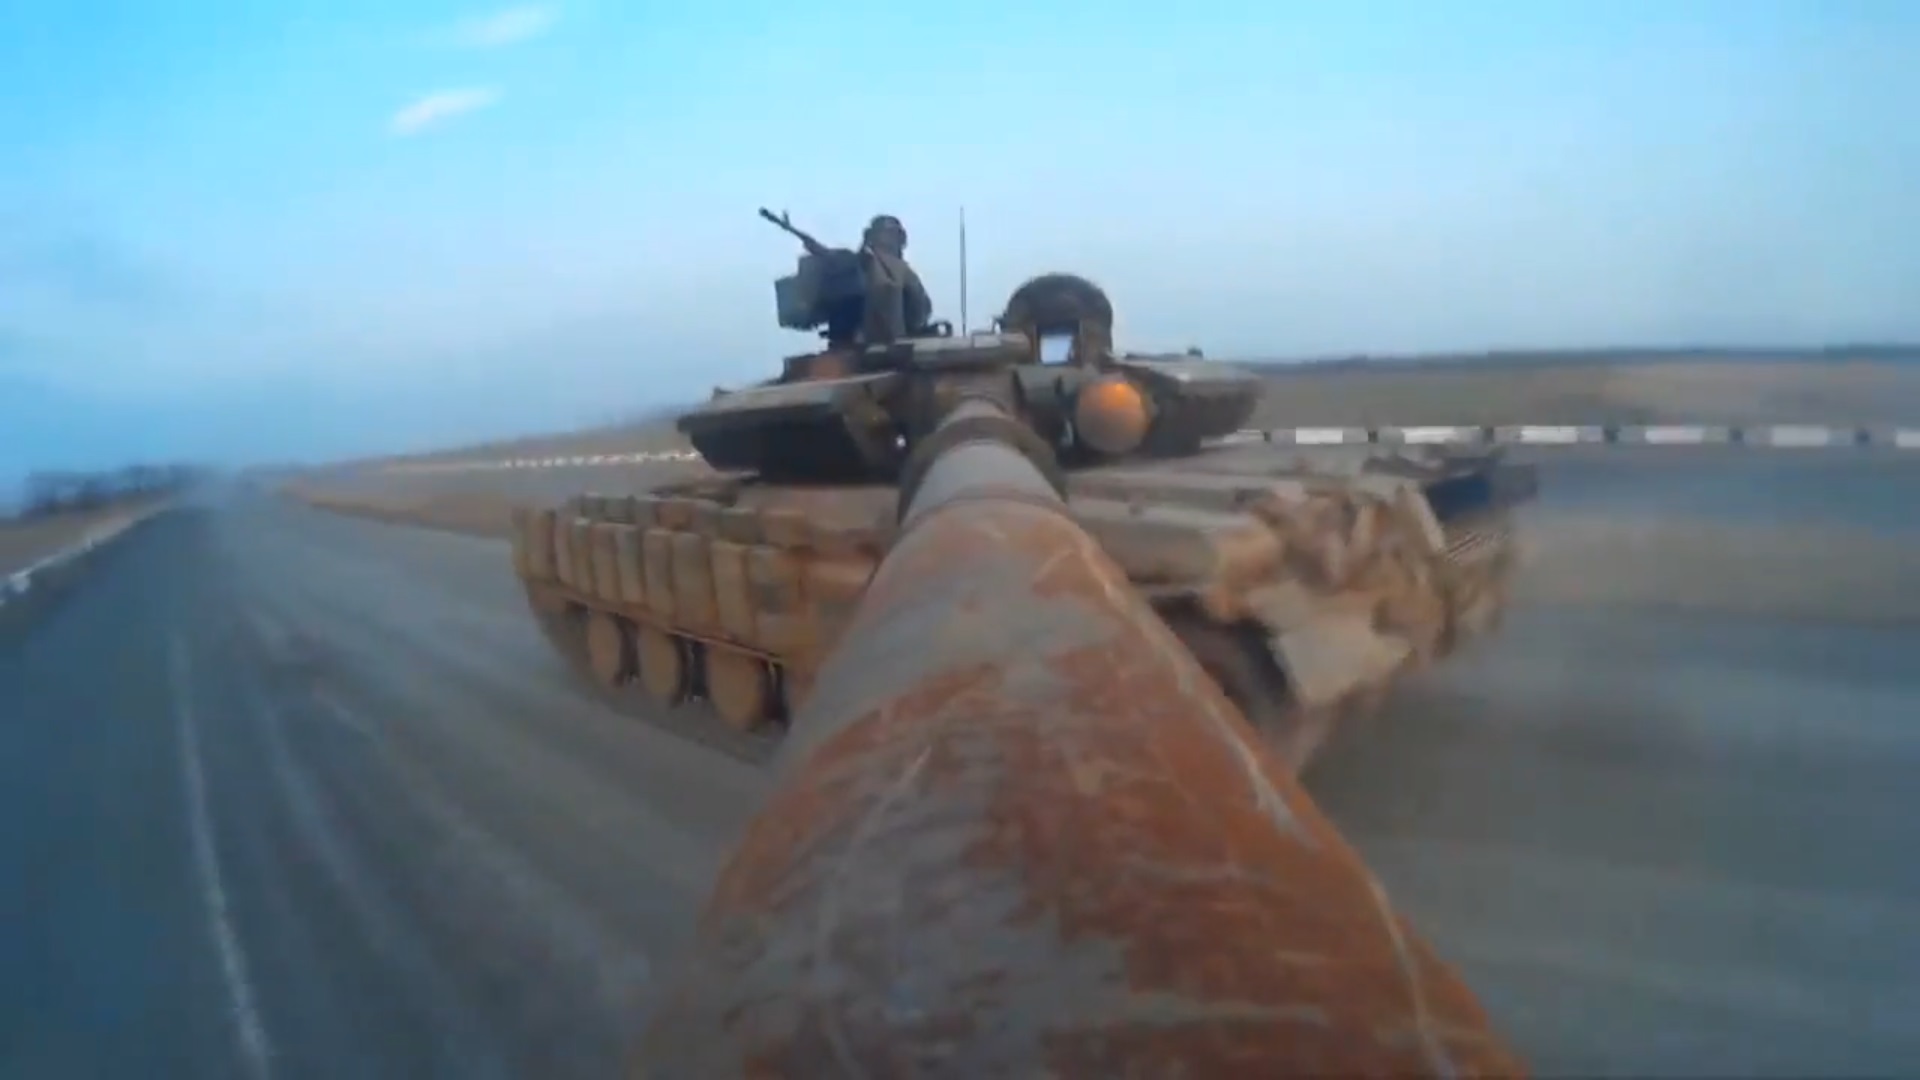 Невероятные кадры! Видео боя с камеры Gо Pro на башне танка Т-64 ВСУ (ВИДЕО)